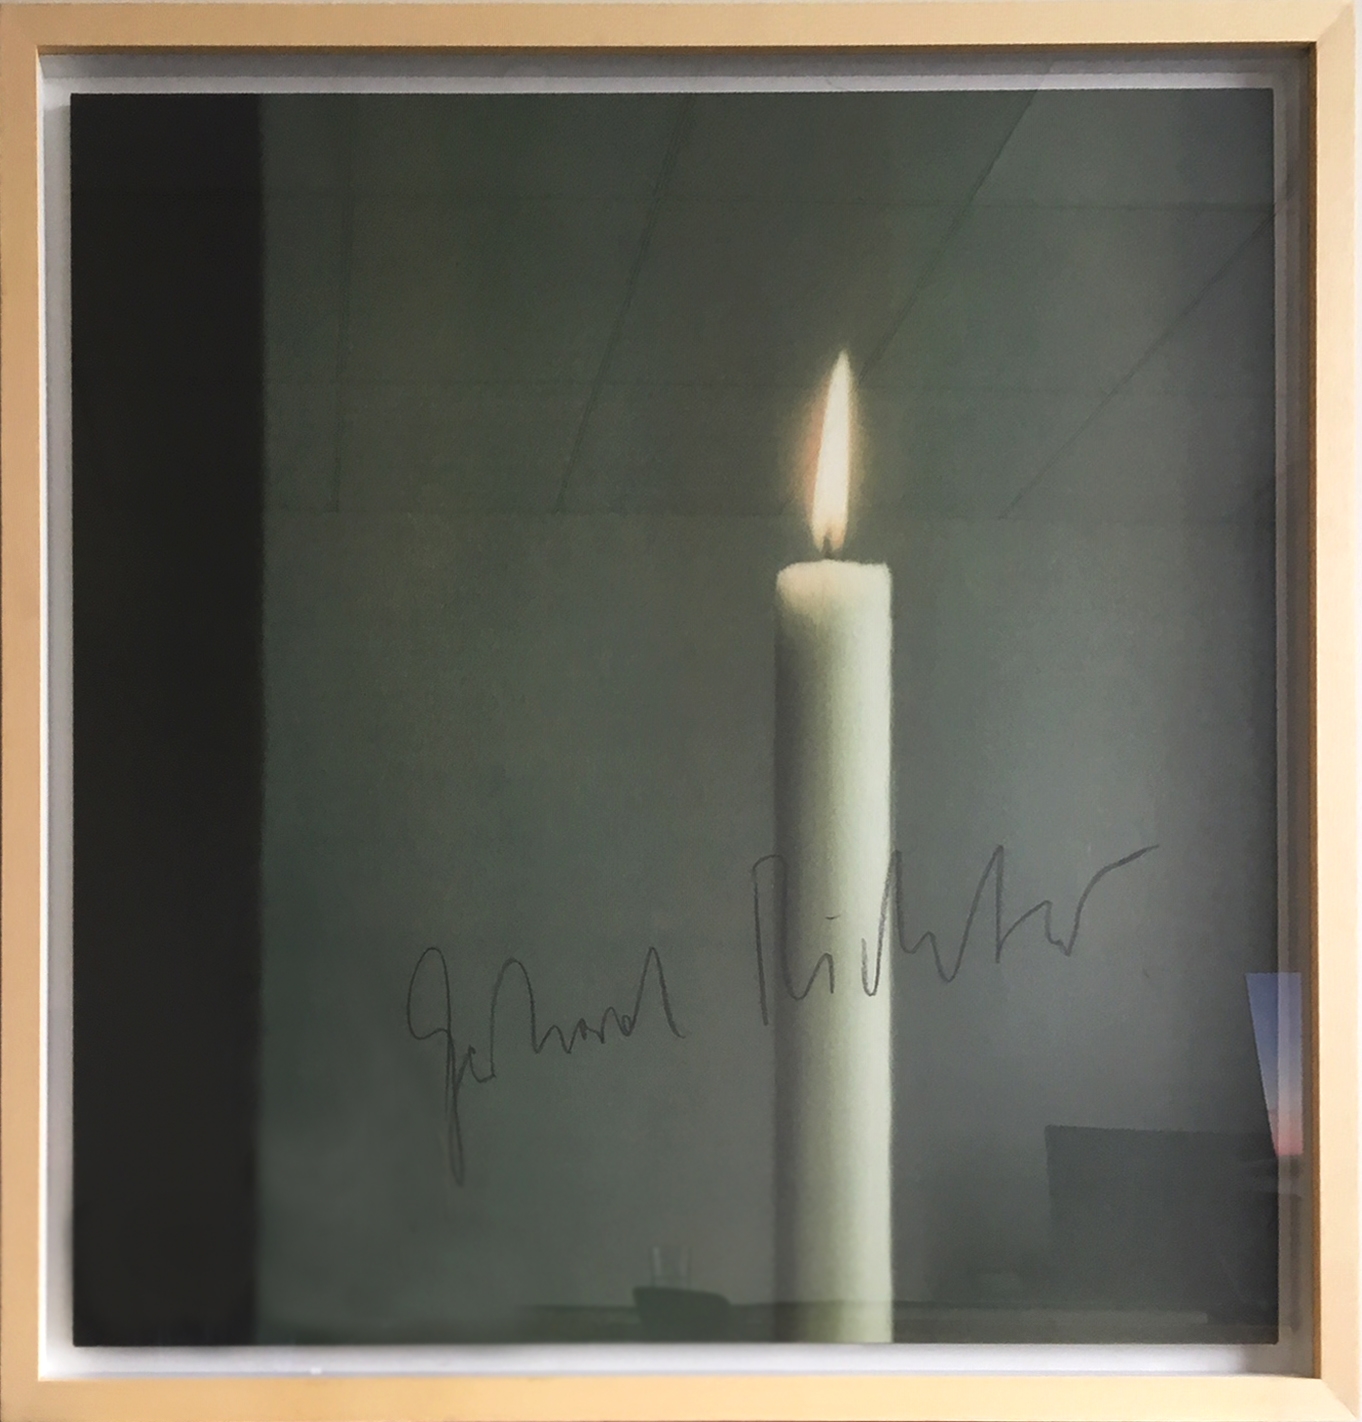 Kerze I By Gerhard Richter On Artnet Auctions